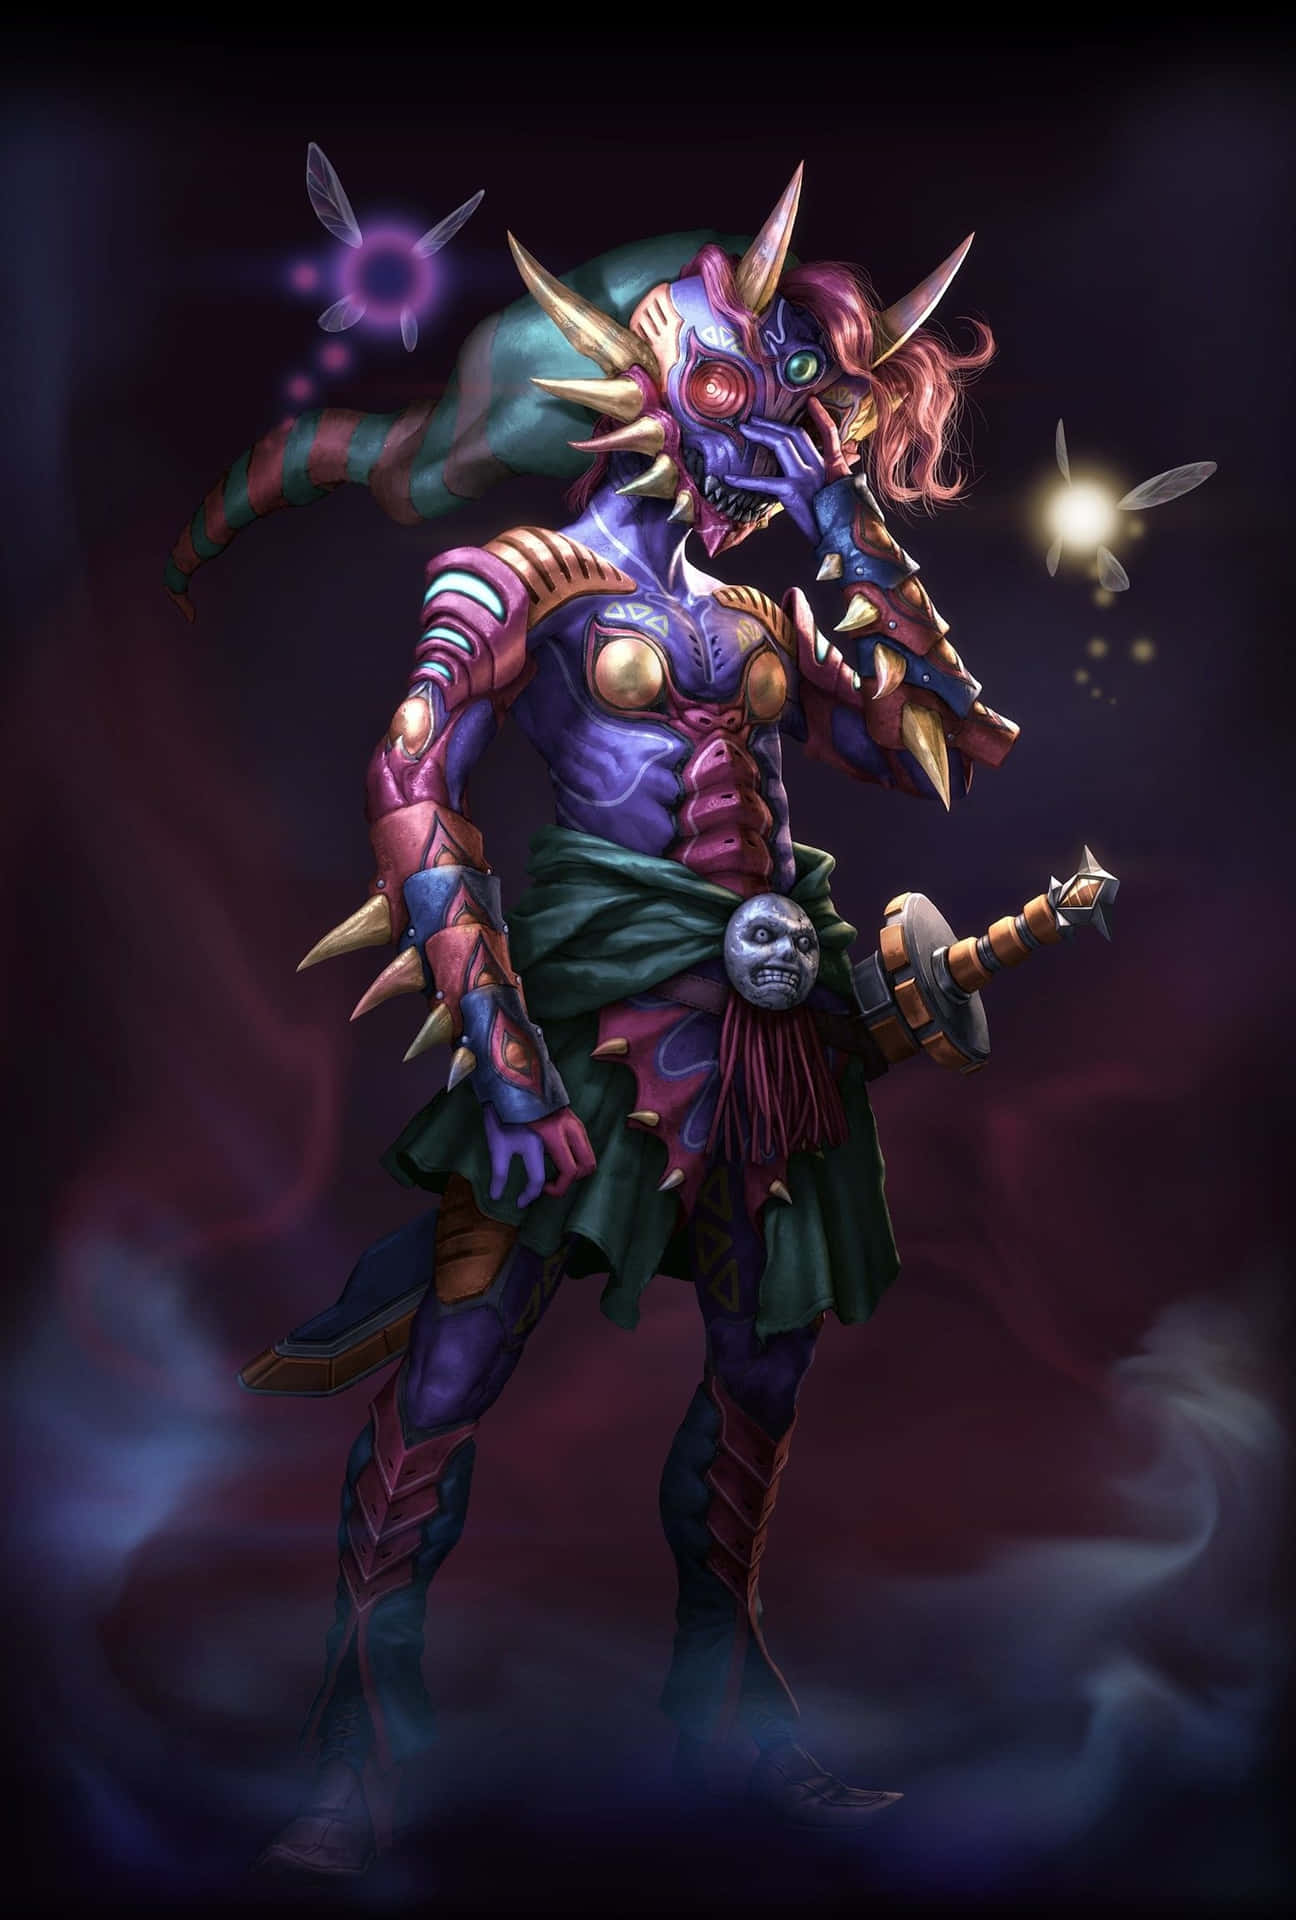 Ganondorf - The Fierce King of Evil Wallpaper